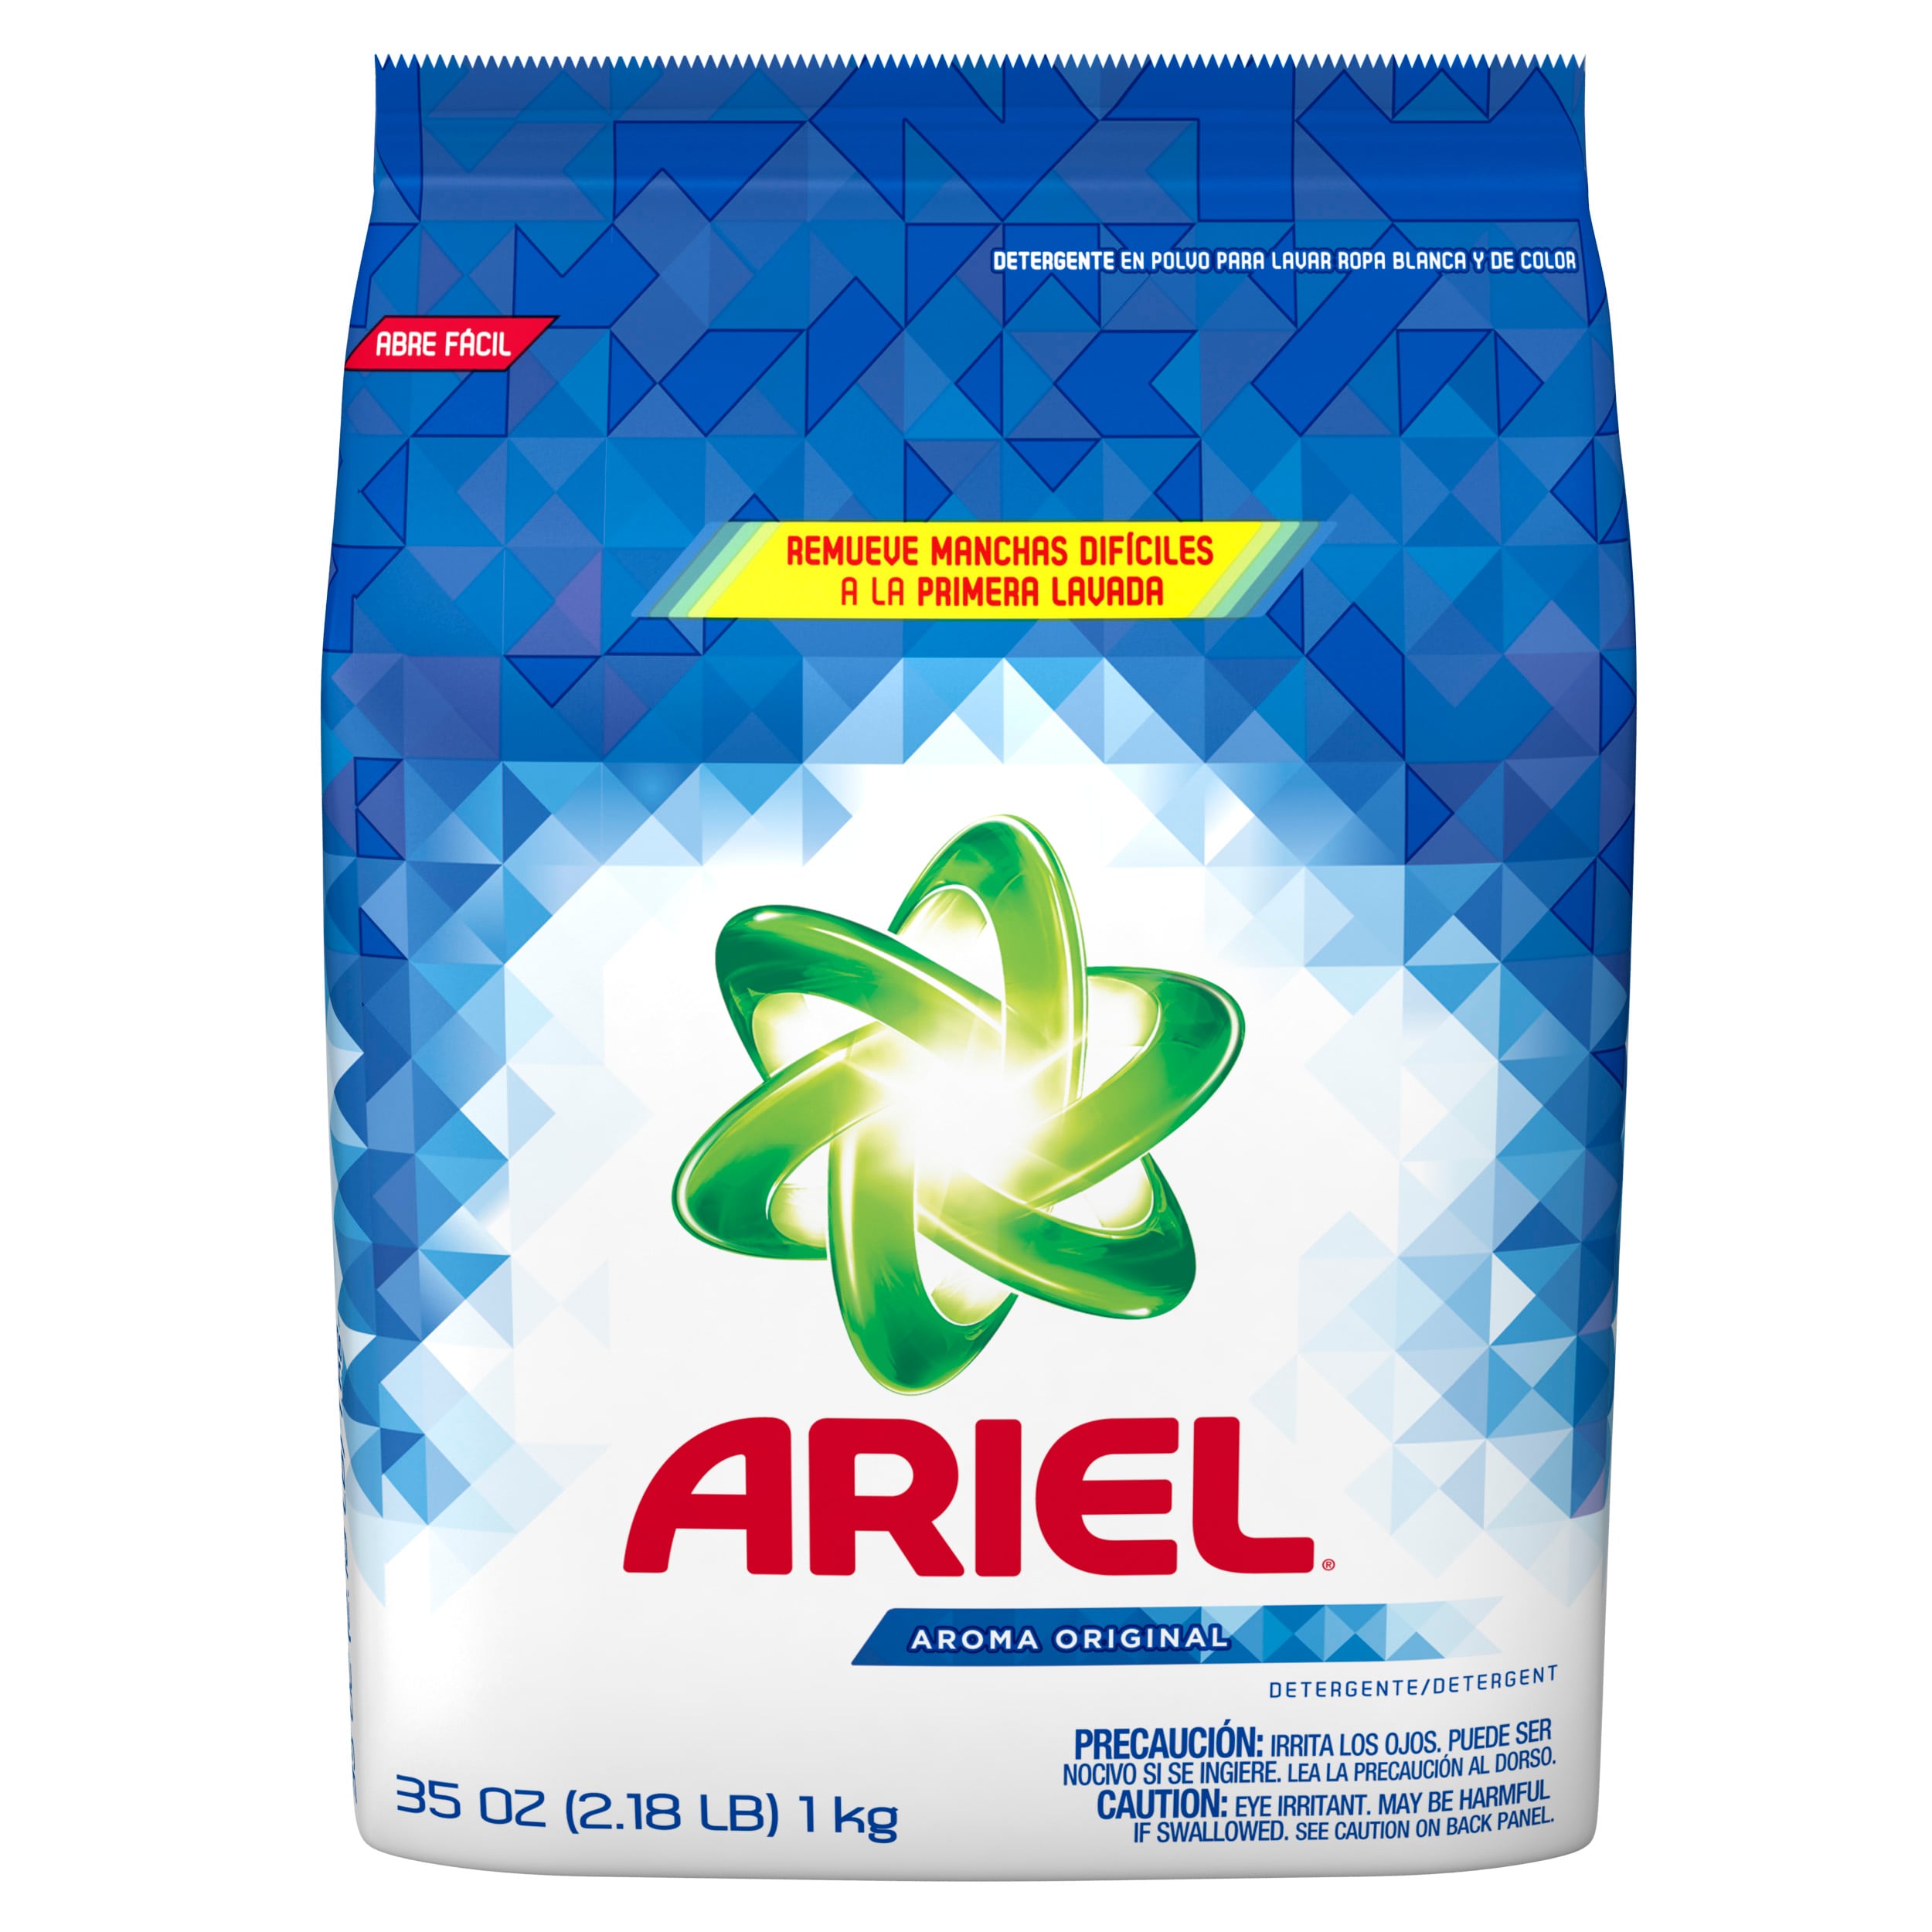 ARIEL 35-oz Original Laundry Detergent in department at Lowes.com